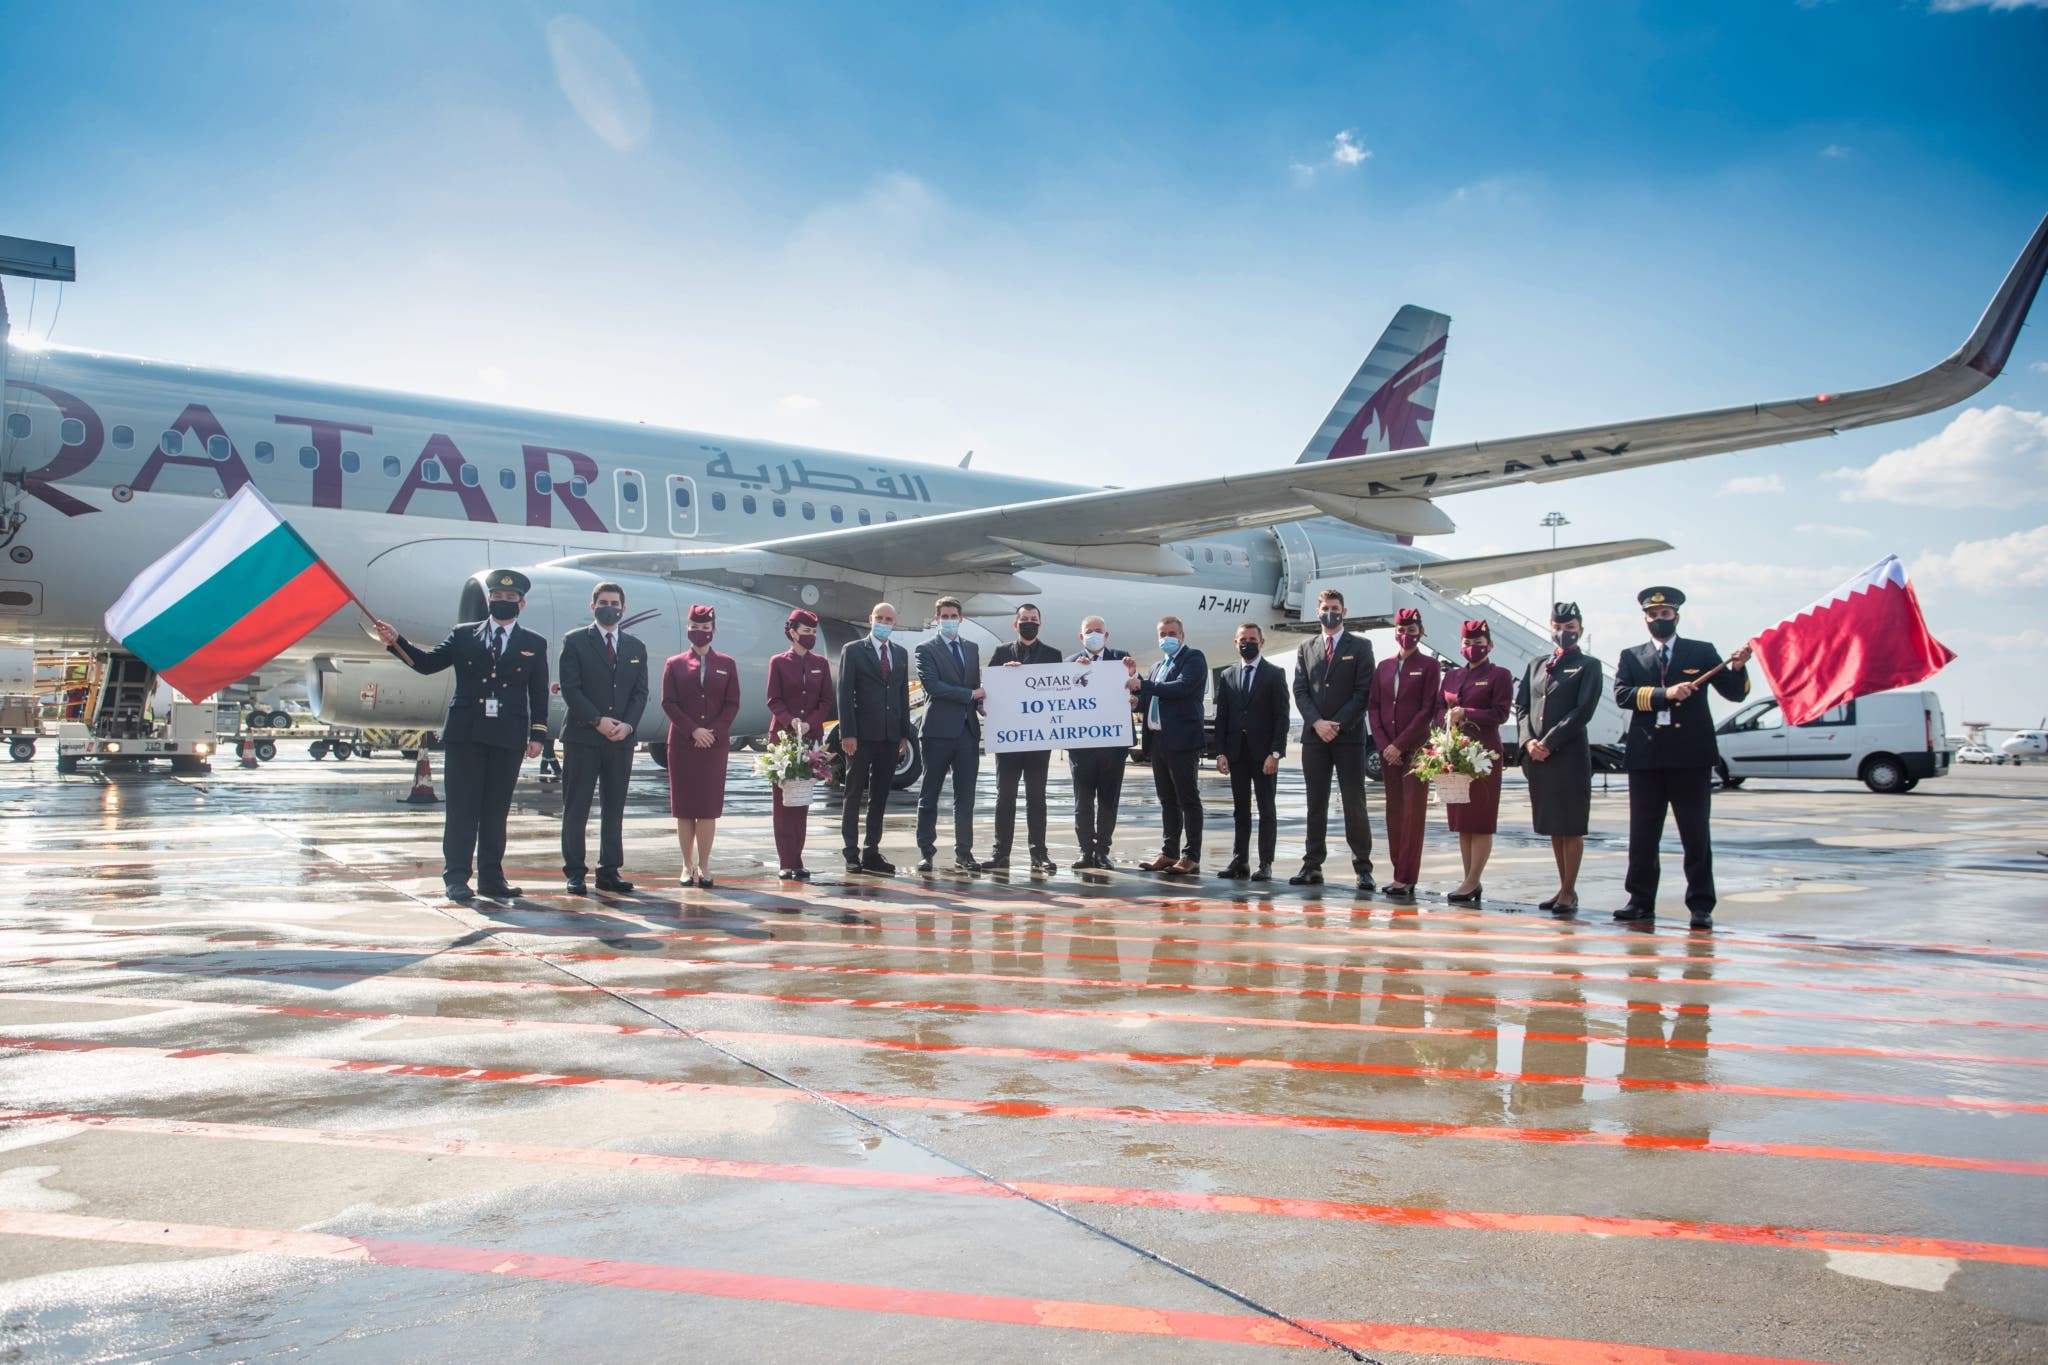 Direktni leti iz Dohe v Sofijo v Bolgariji zdaj z letalsko družbo Qatar Airways